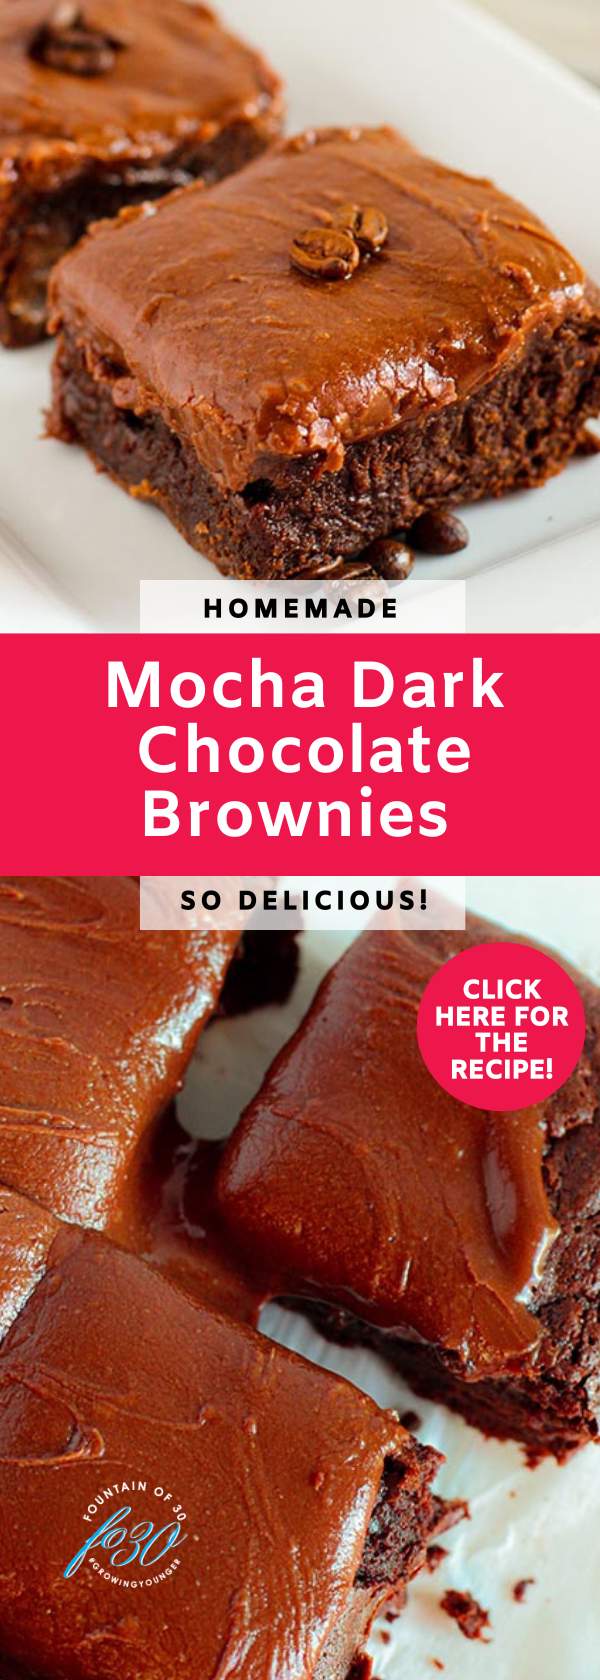 homemade mocha dark chocolate brownies fountainof30